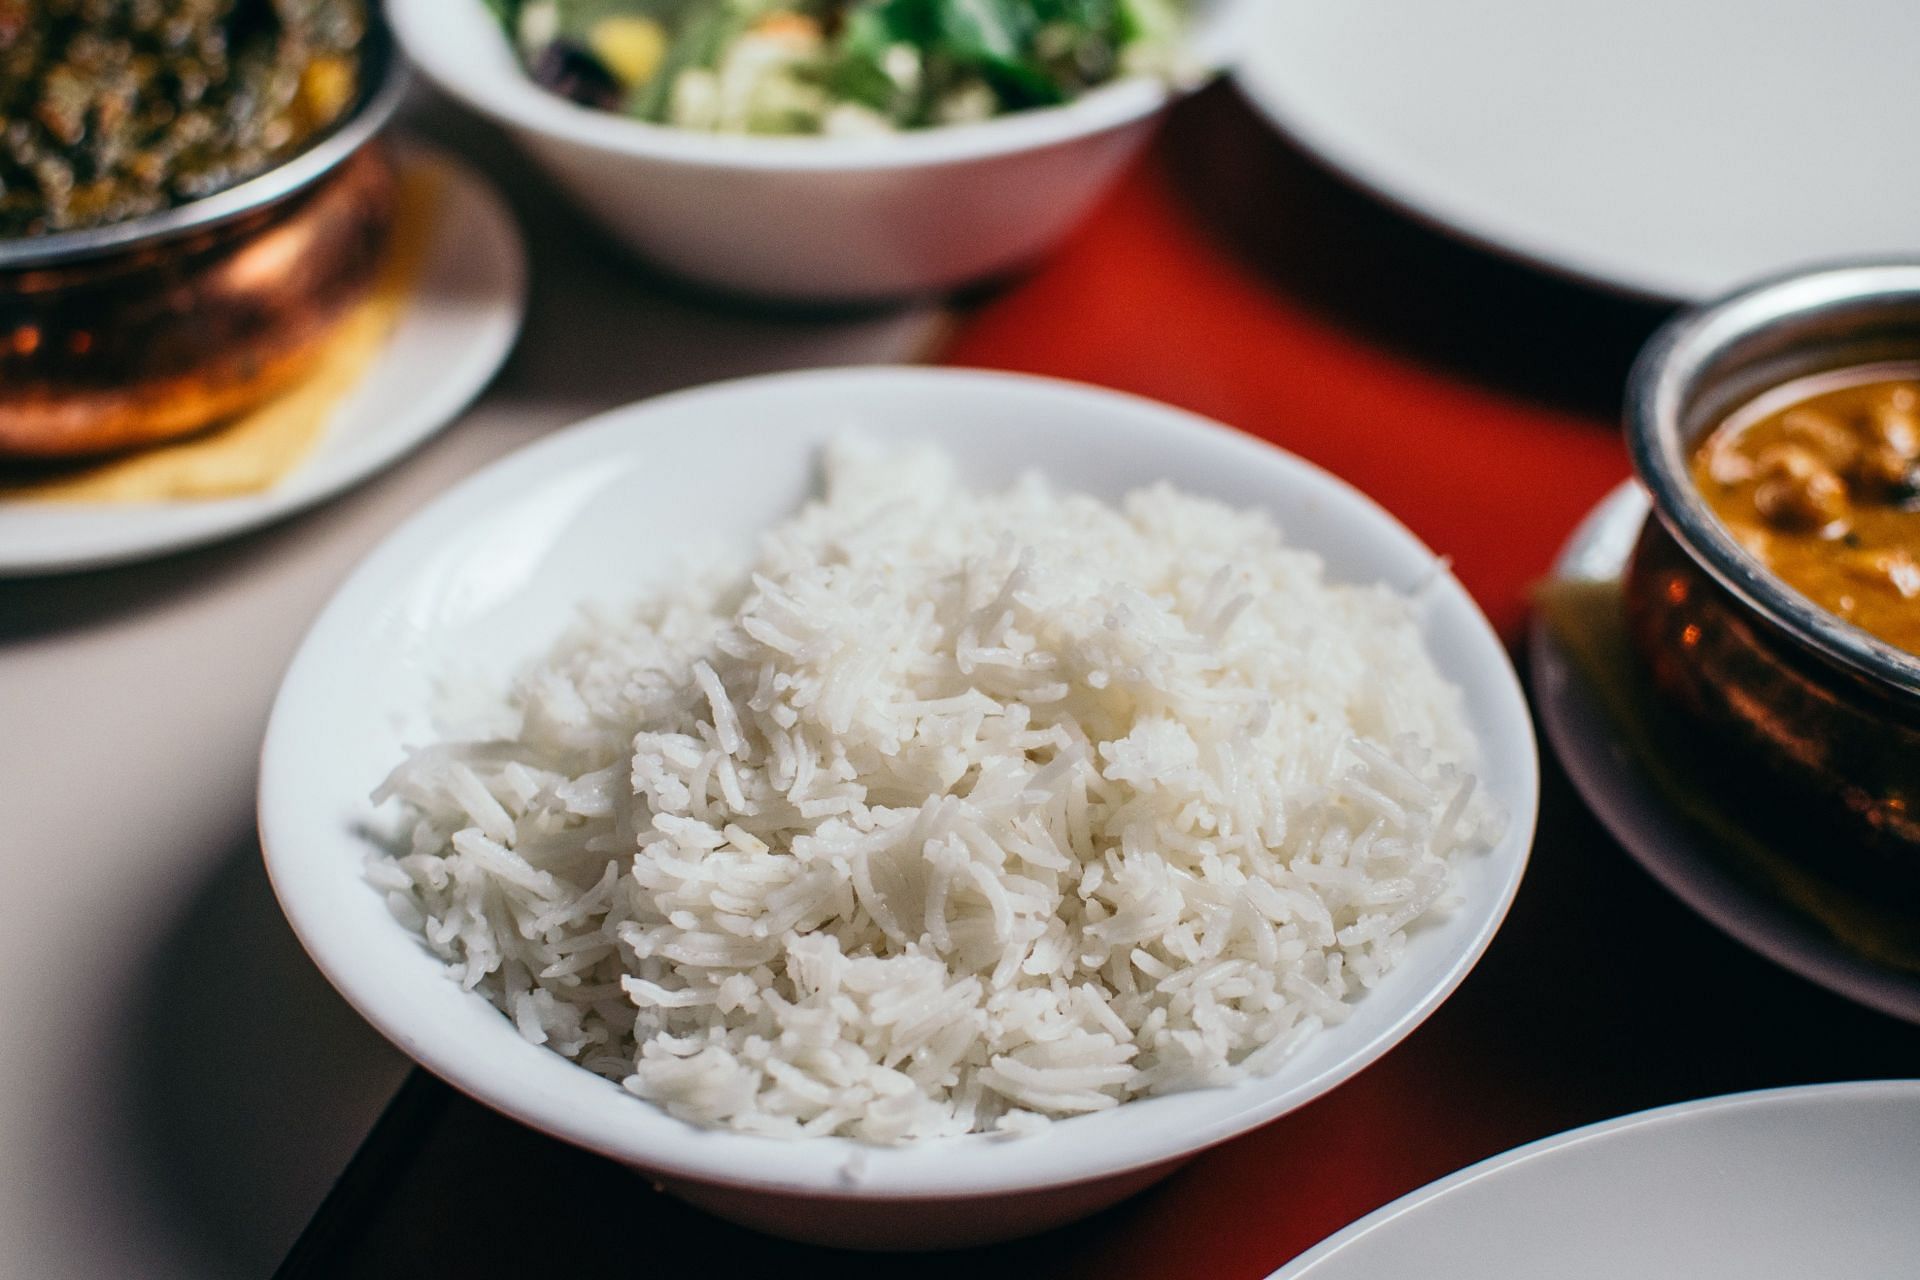 Leftover rice can cause food poisoning (Image via Unsplash/Pille R. Priske)